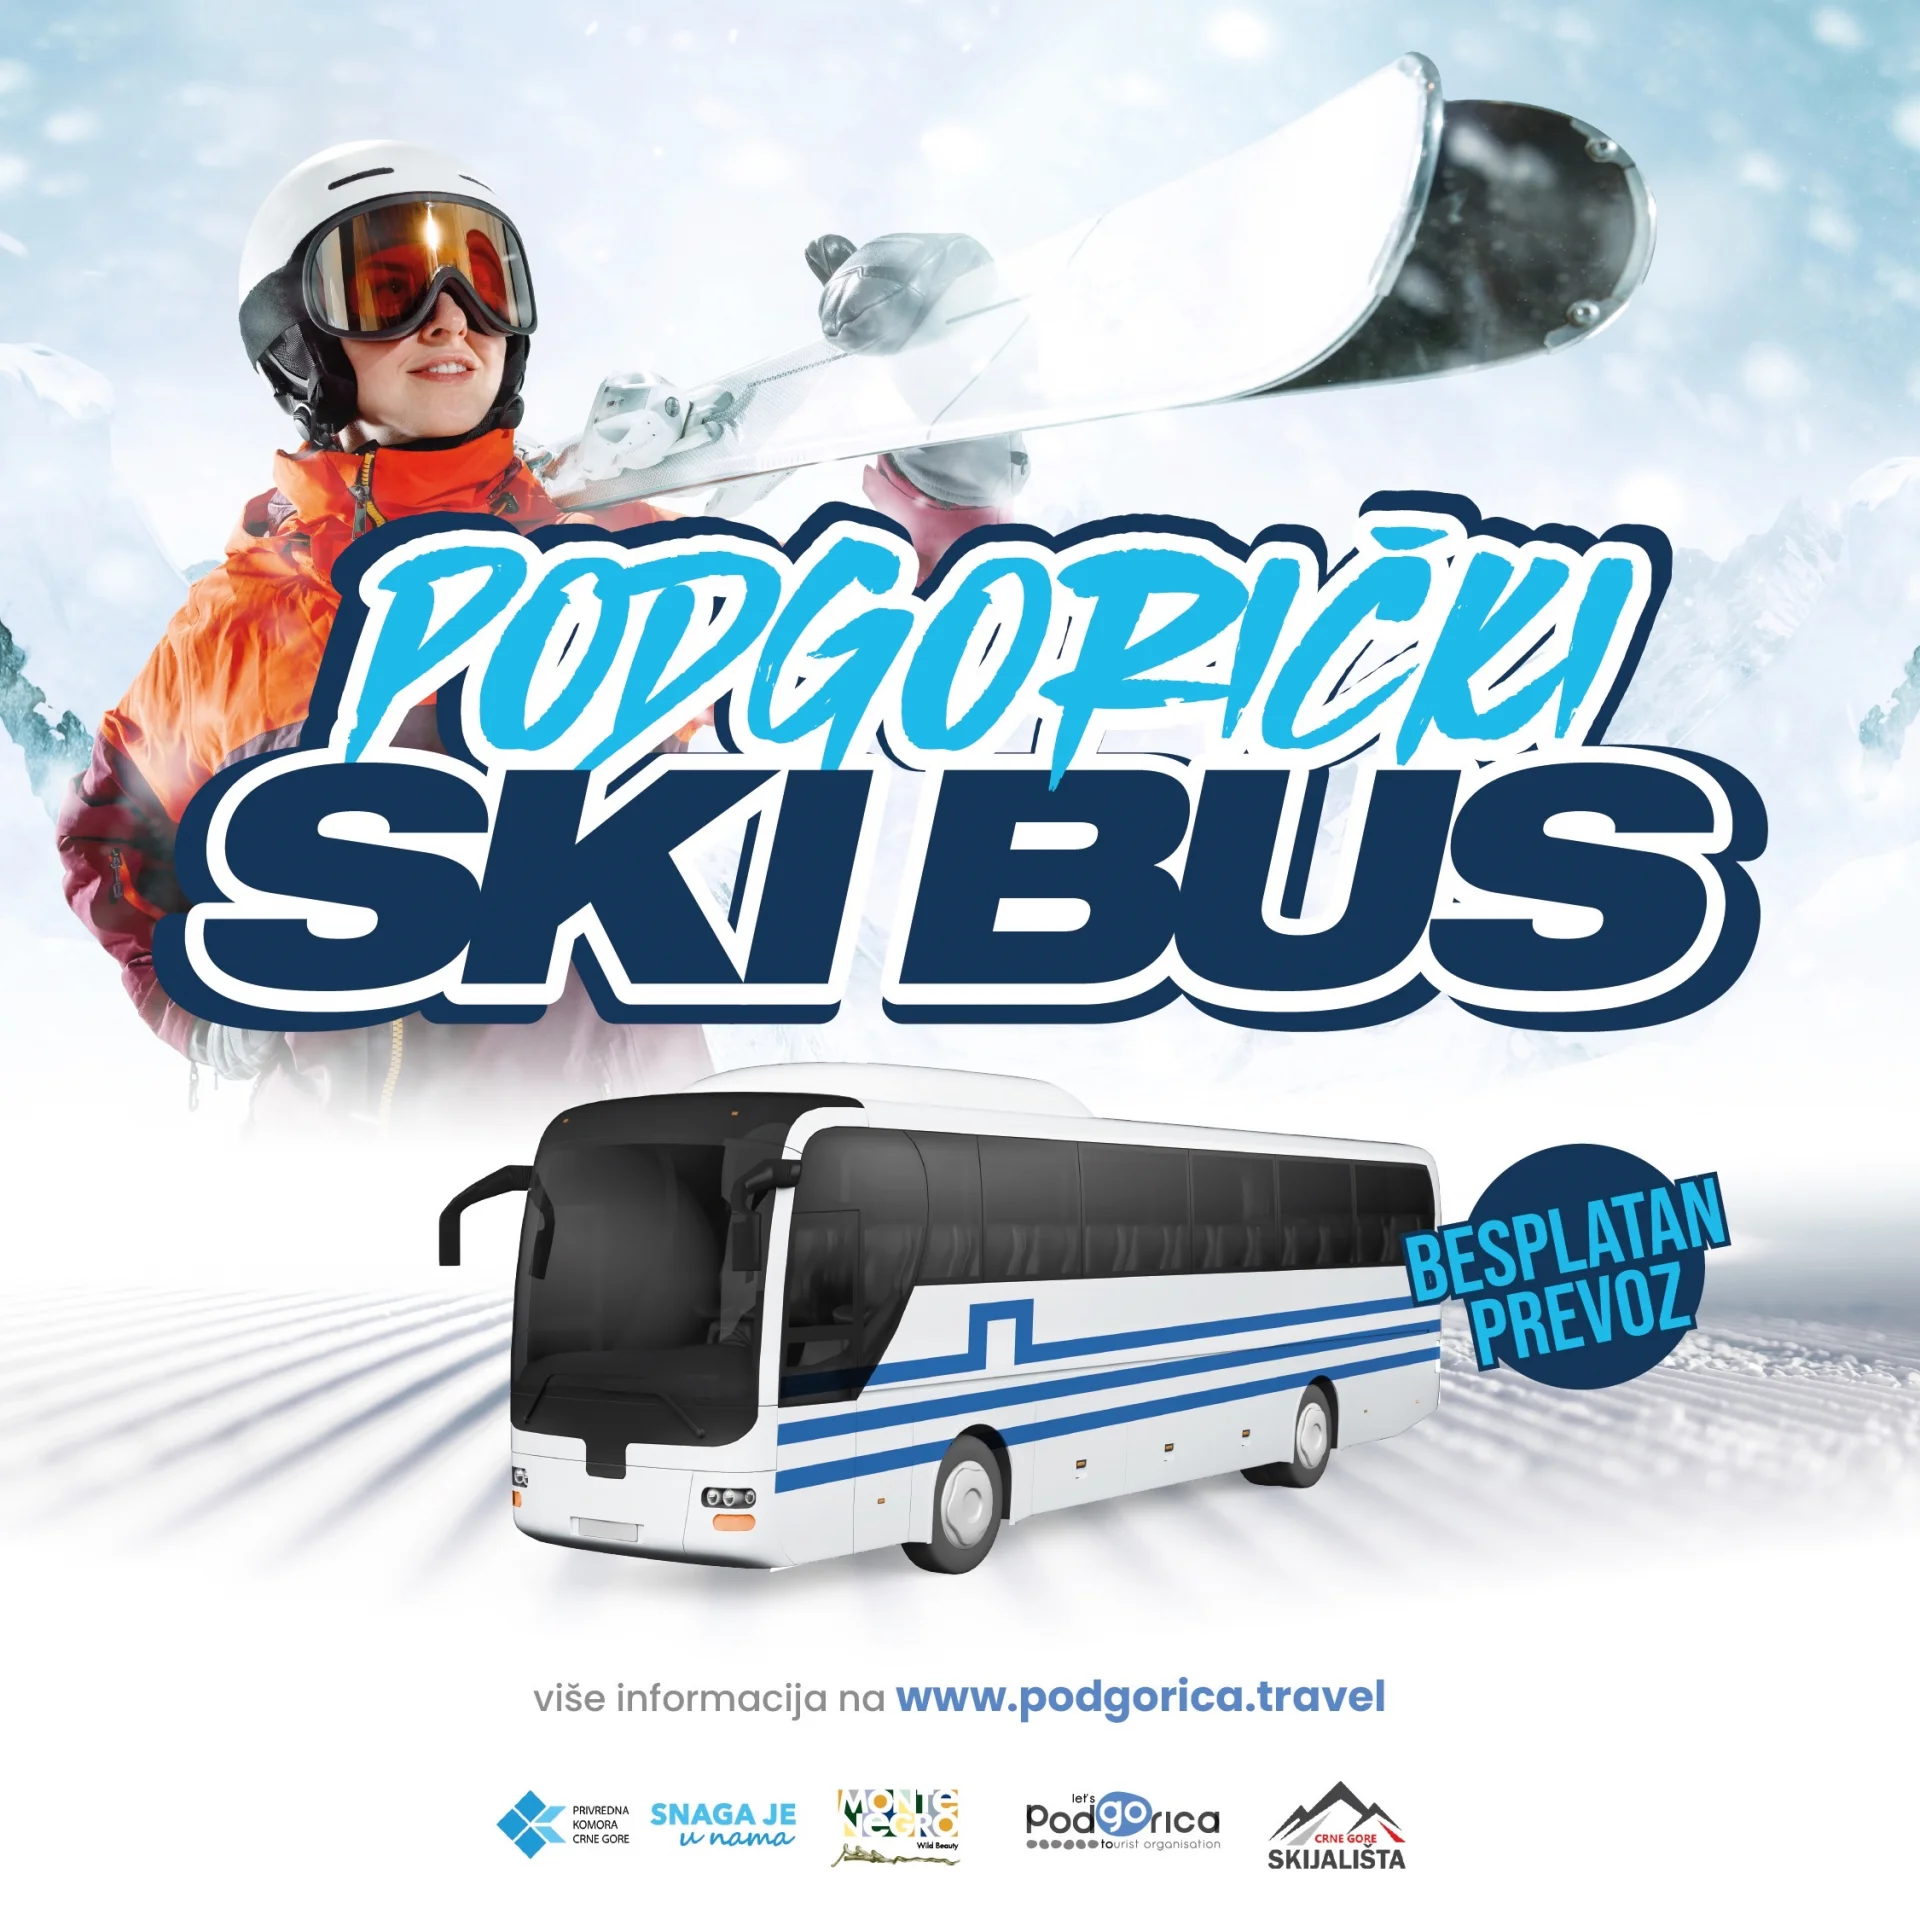 Od danas besplatni ski bus iz Podgorice do Kolašina